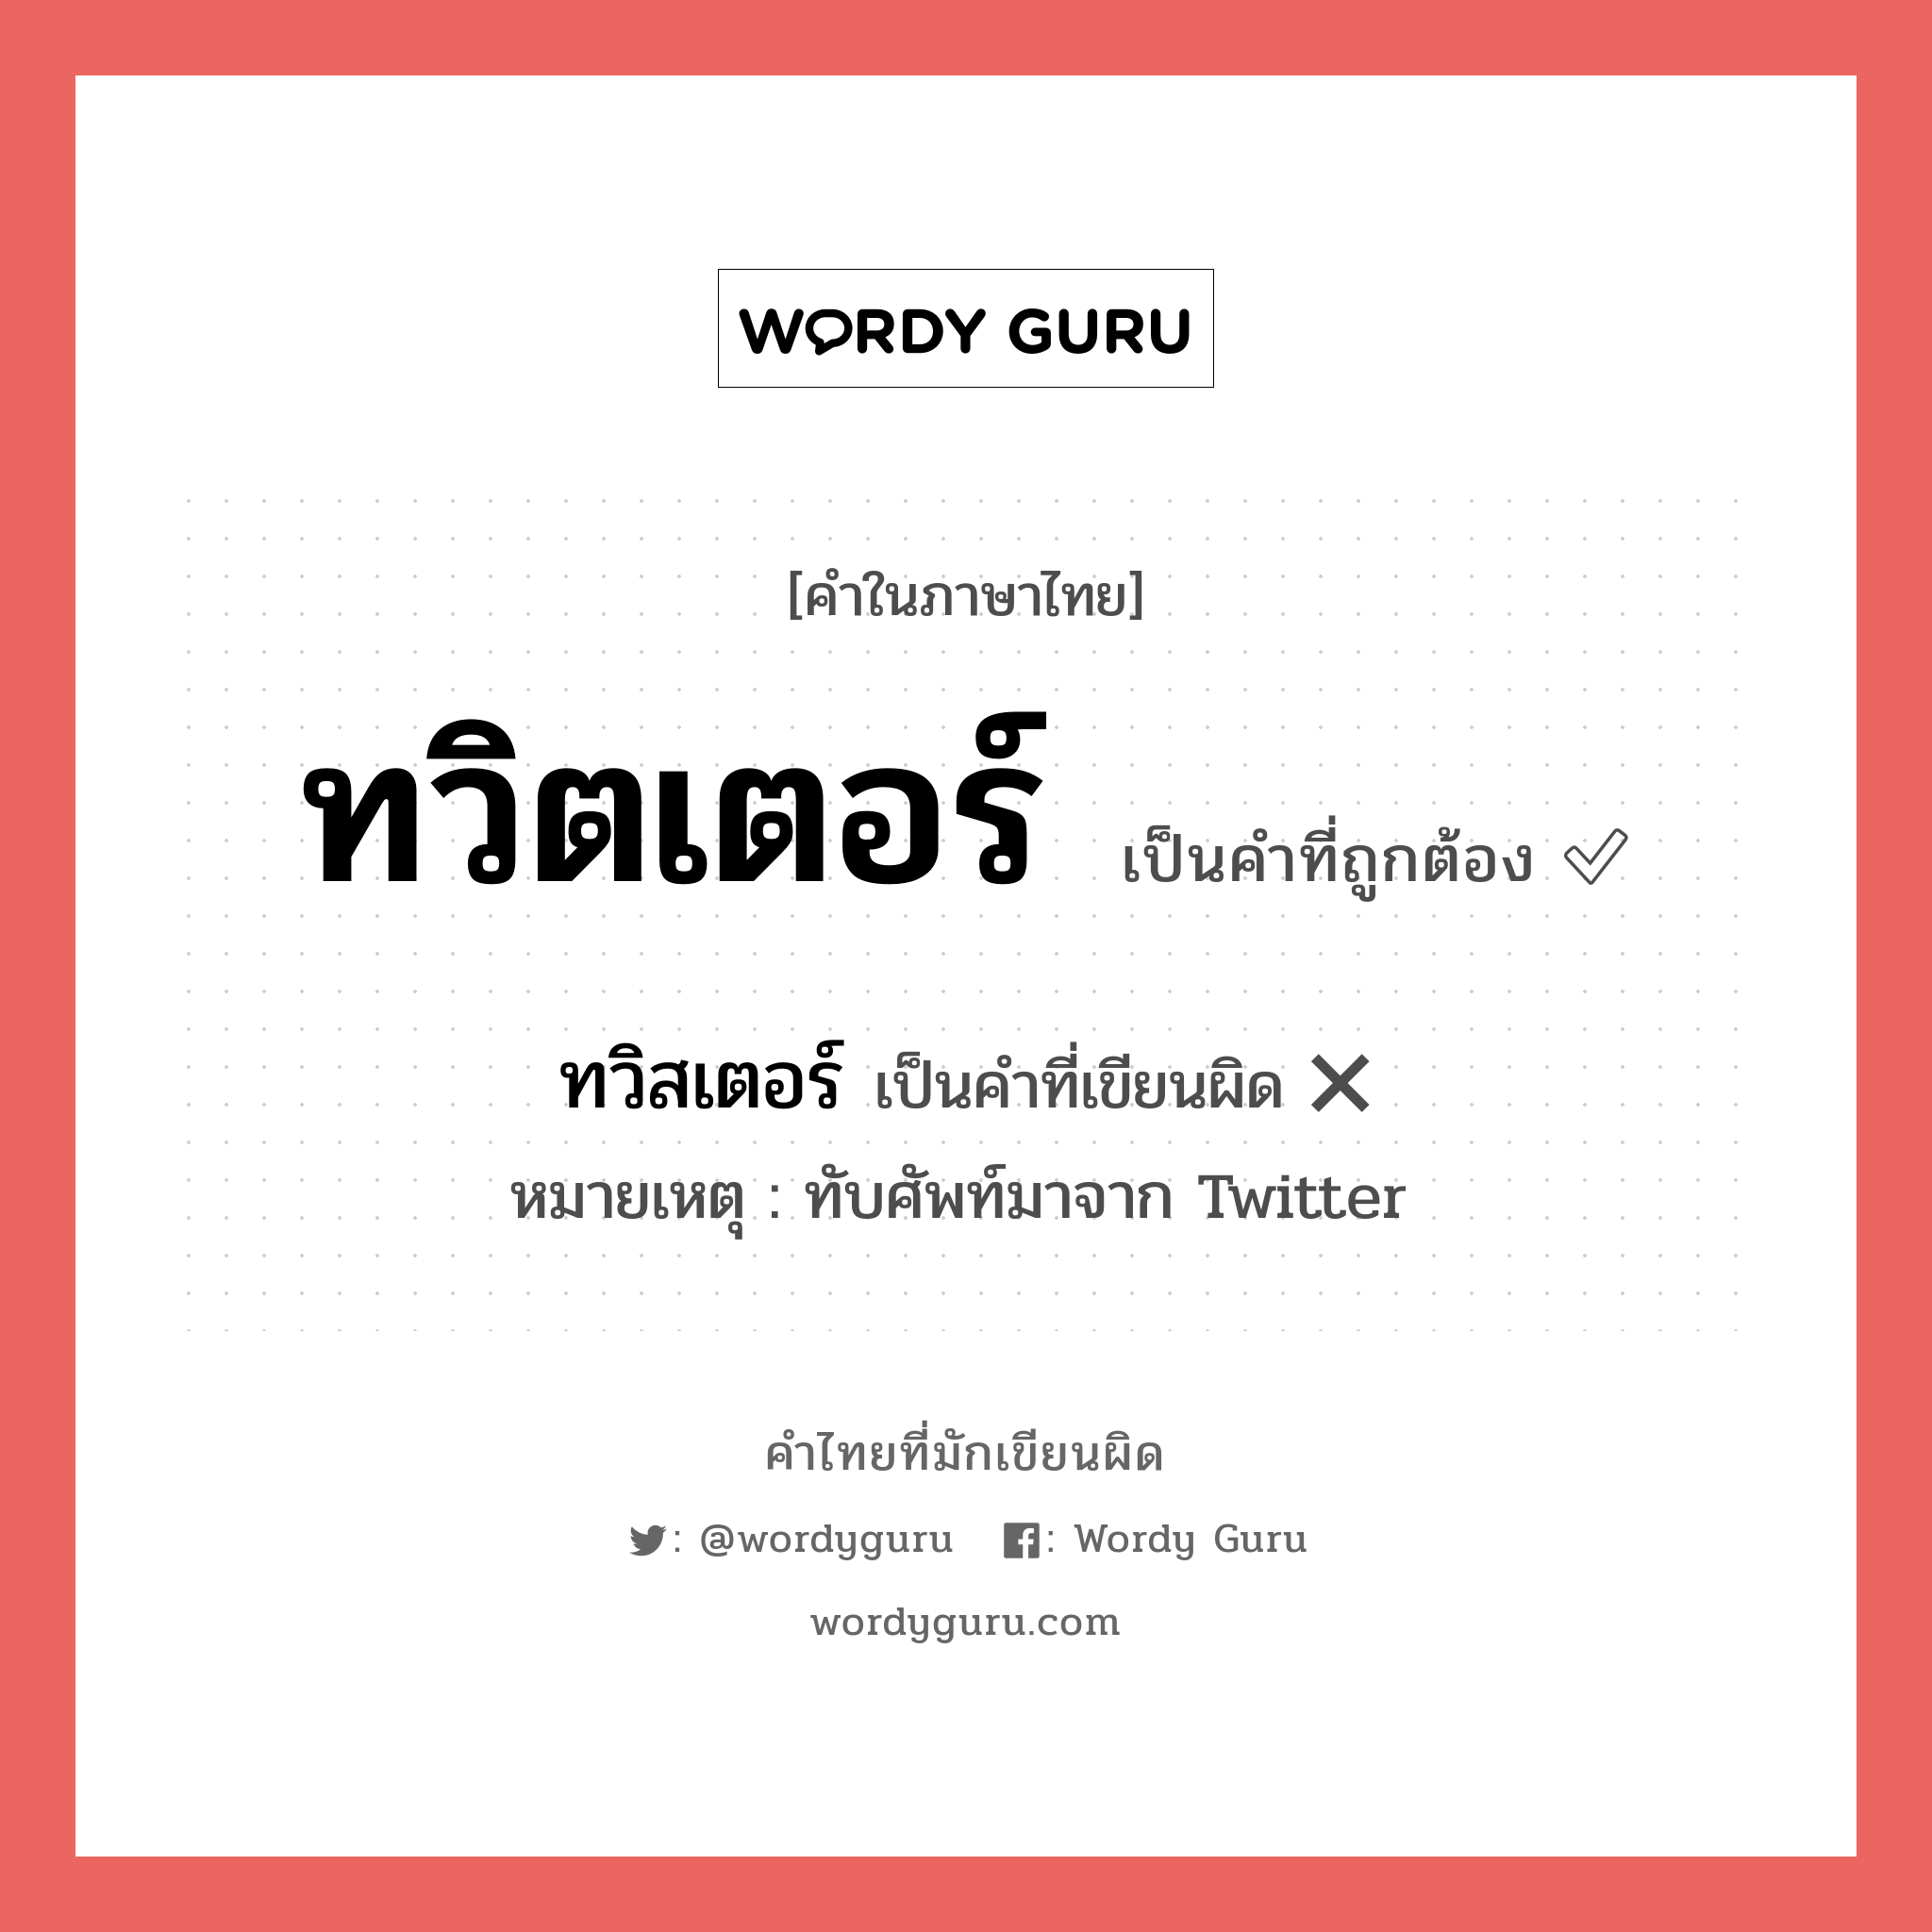 ทวิตเตอร์ หรือ ทวิสเตอร์ เขียนยังไง? คำไหนเขียนถูก?, คำในภาษาไทยที่มักเขียนผิด ทวิตเตอร์ คำที่ผิด ❌ ทวิสเตอร์ หมายเหตุ ทับศัพท์มาจาก Twitter